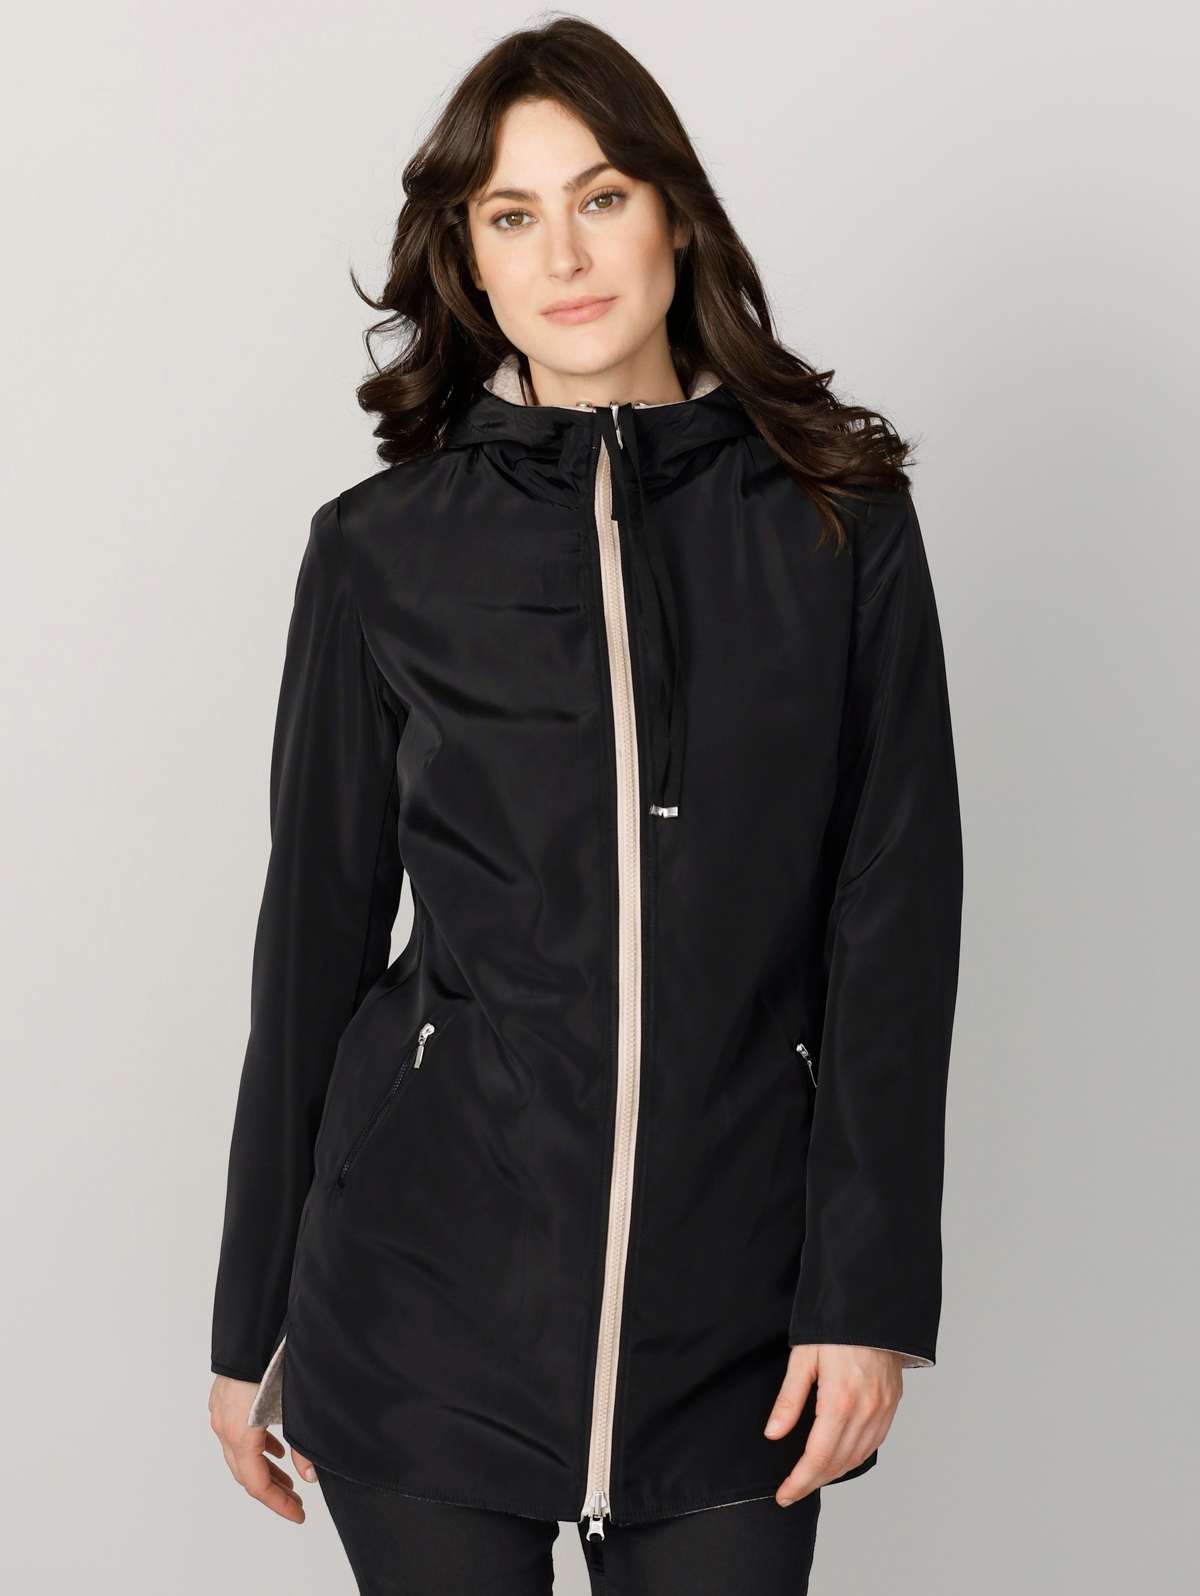 Двусторонняя куртка Двусторонняя куртка с возможностью индивидуального ношения